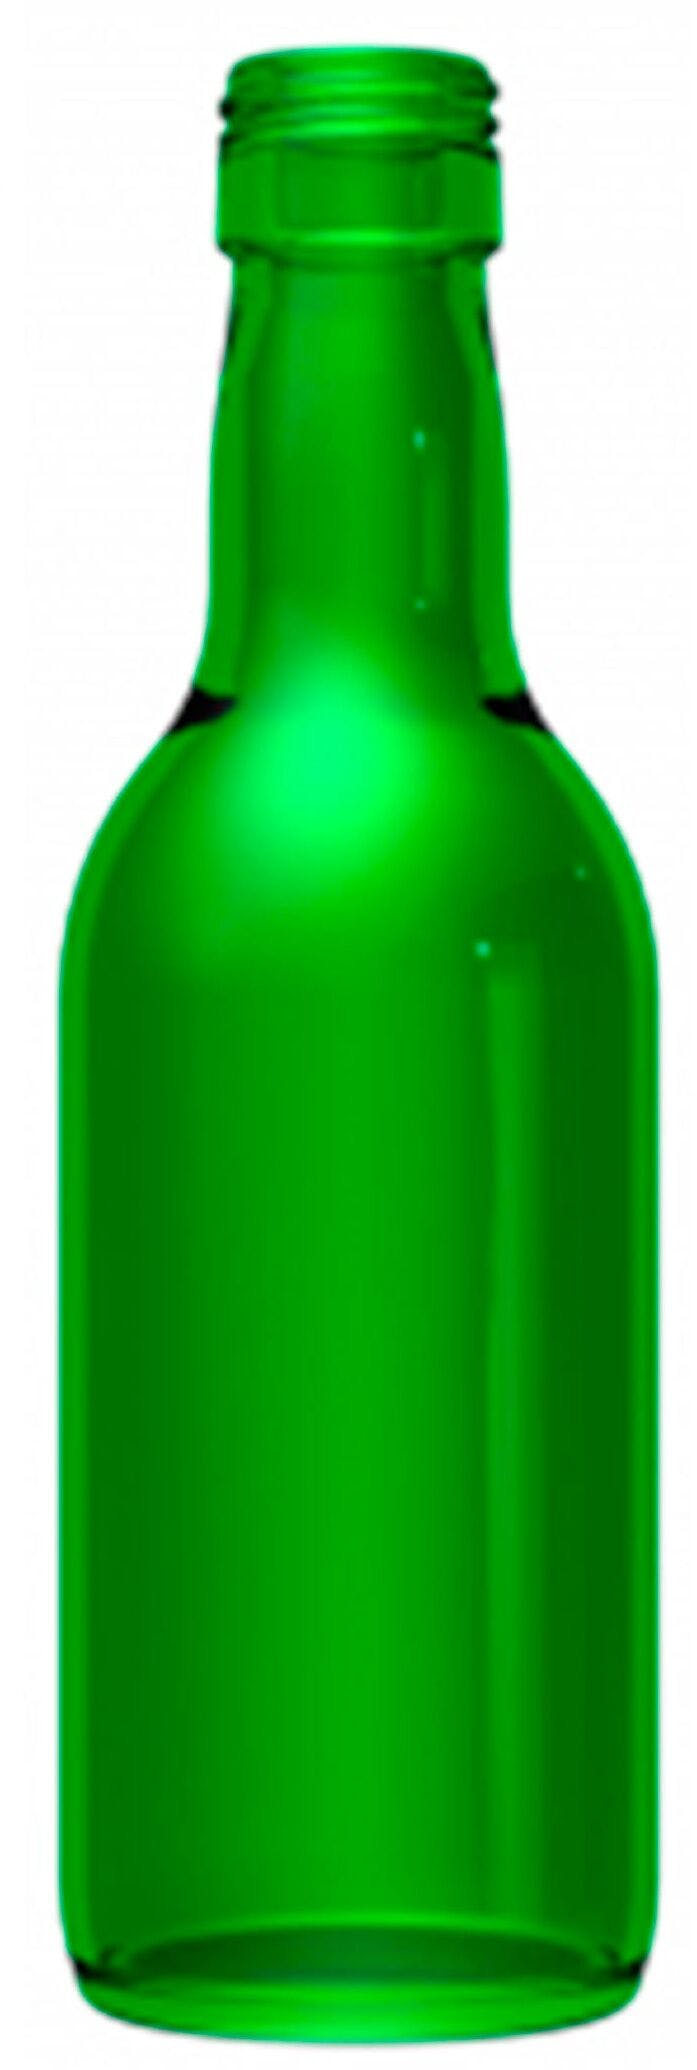 Bottle BORDELESA  STD 187 ml PP 22